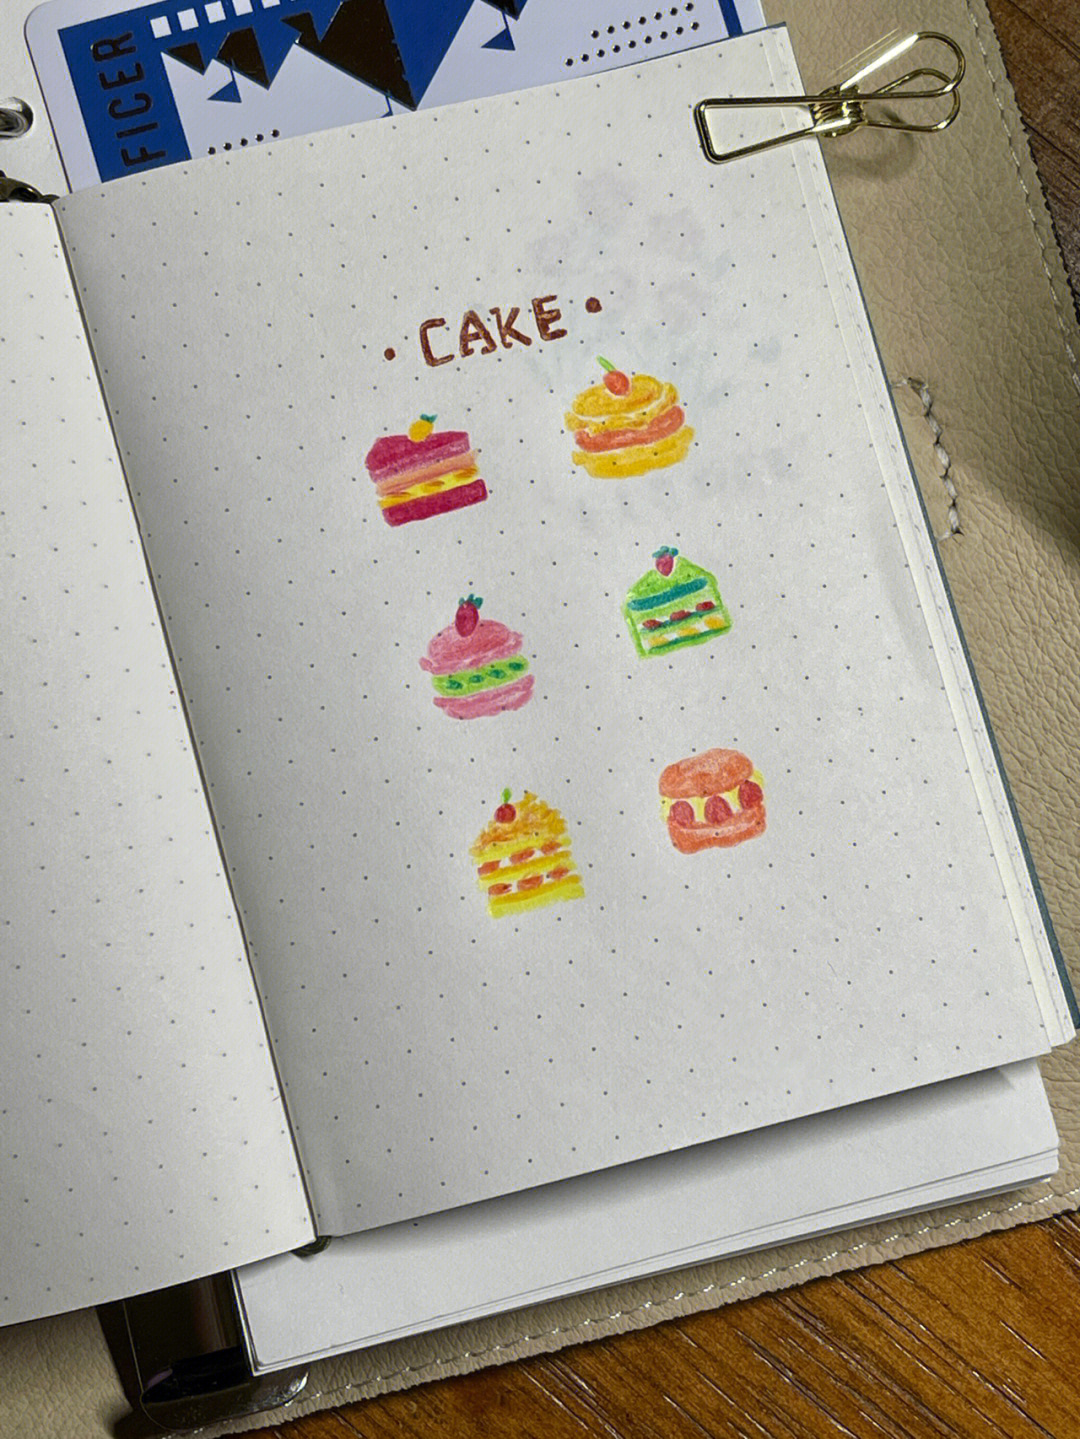 cake简笔画彩色图片